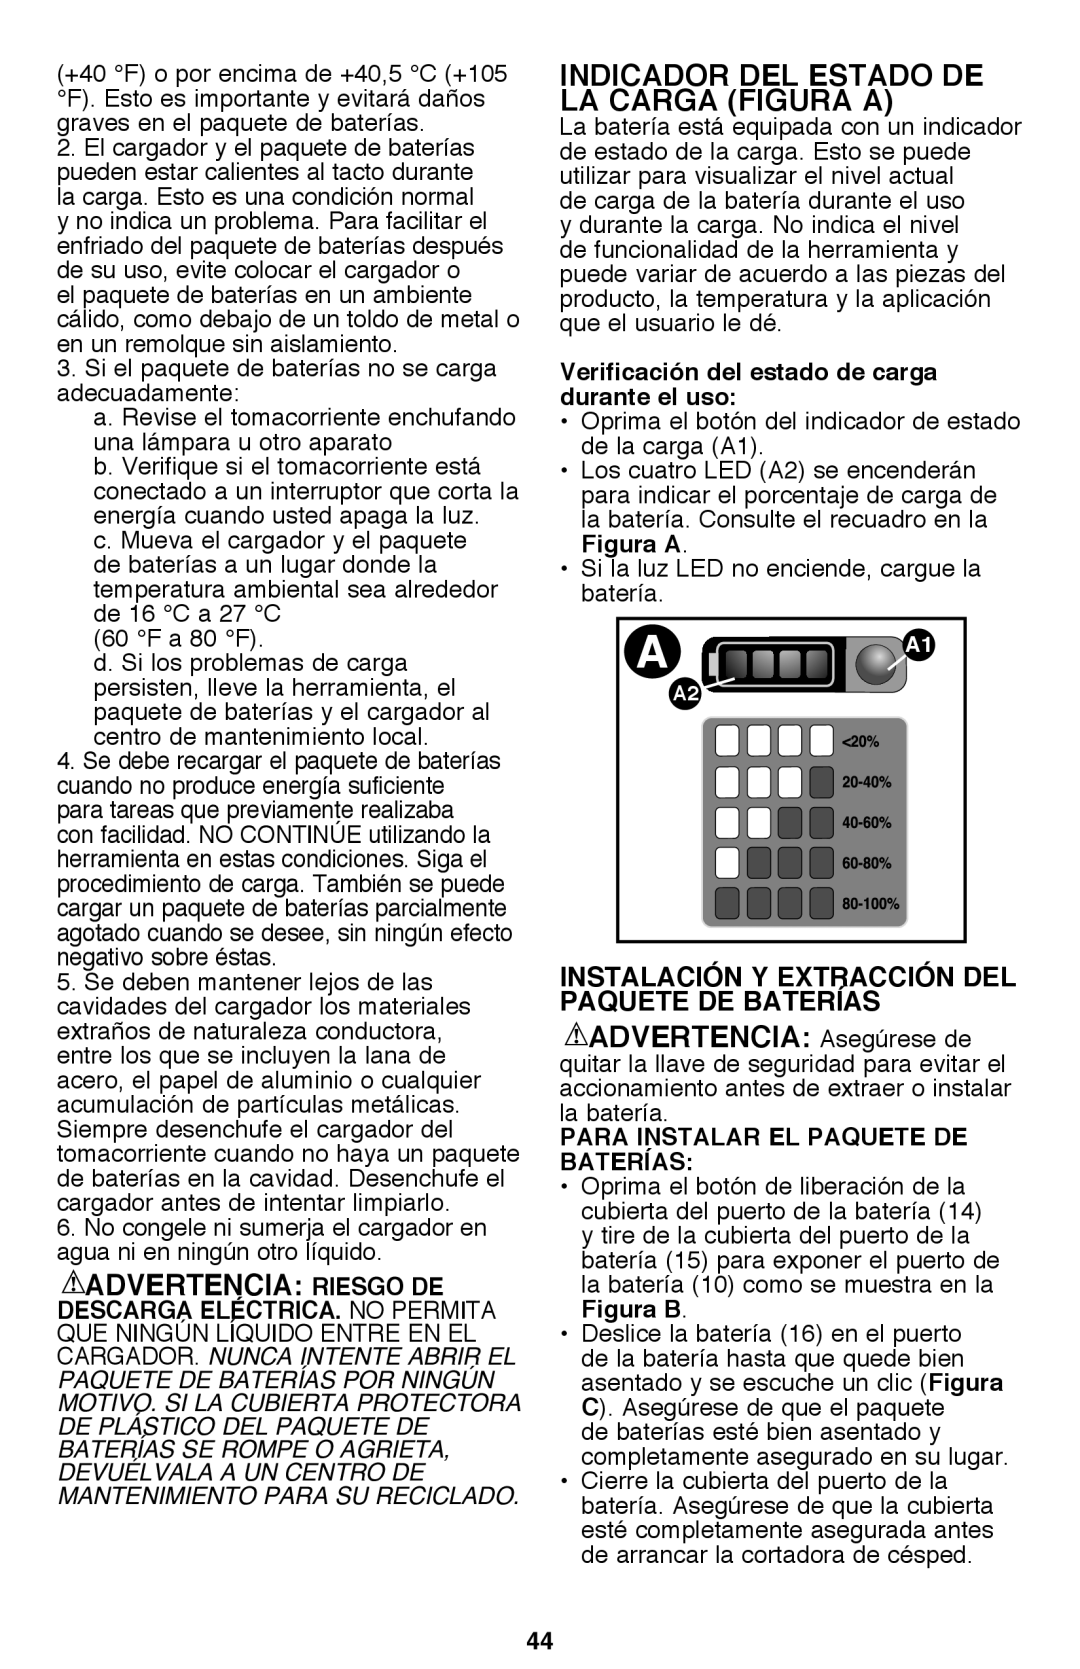 Black & Decker CM2040 instruction manual Indicador Del Estado De La Carga Figura A 